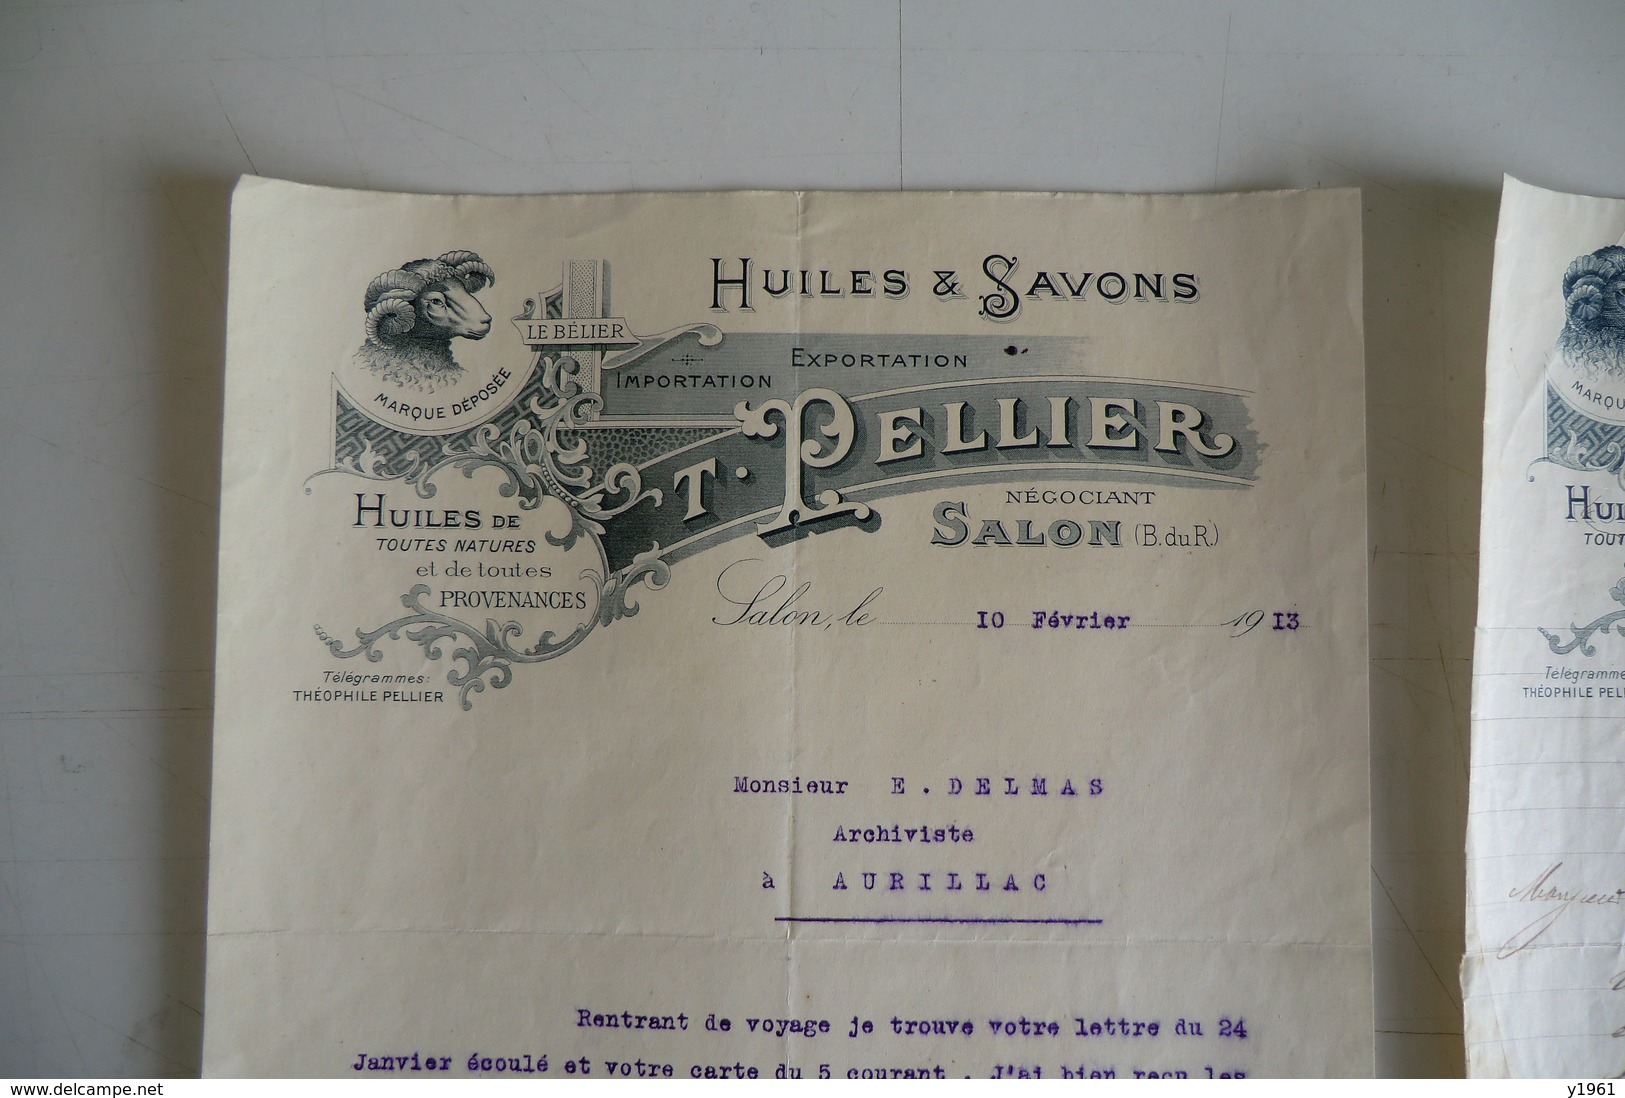 (014) FACTURES DOCUMENTS COMMERCIAUX. 13 BOUCHE DU RHONE SALON DE PROVENCE. T. PELLIER. Huiles, Savons.1933. - Food